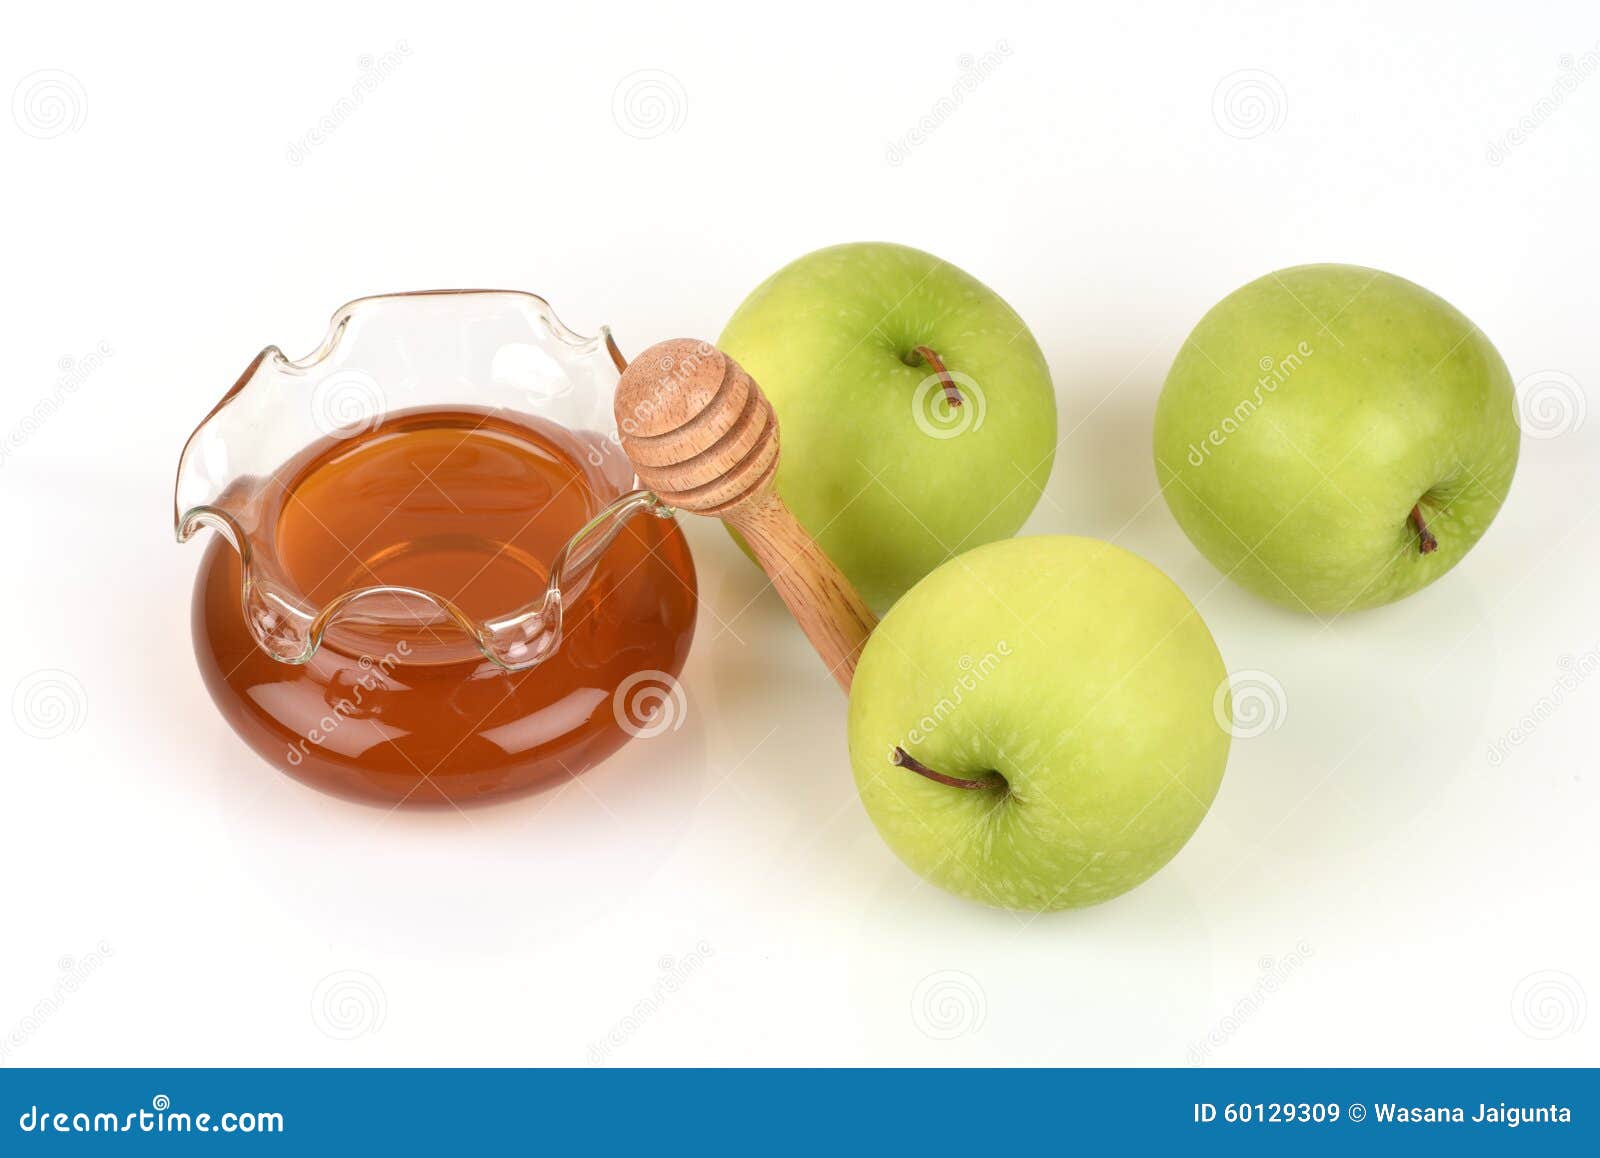 Маска из яблока для лица. Яблоко с медом для глаз. Маска для лица с яблоком и медом. Мед и зеленое яблоко для глаз. Маски из яблок